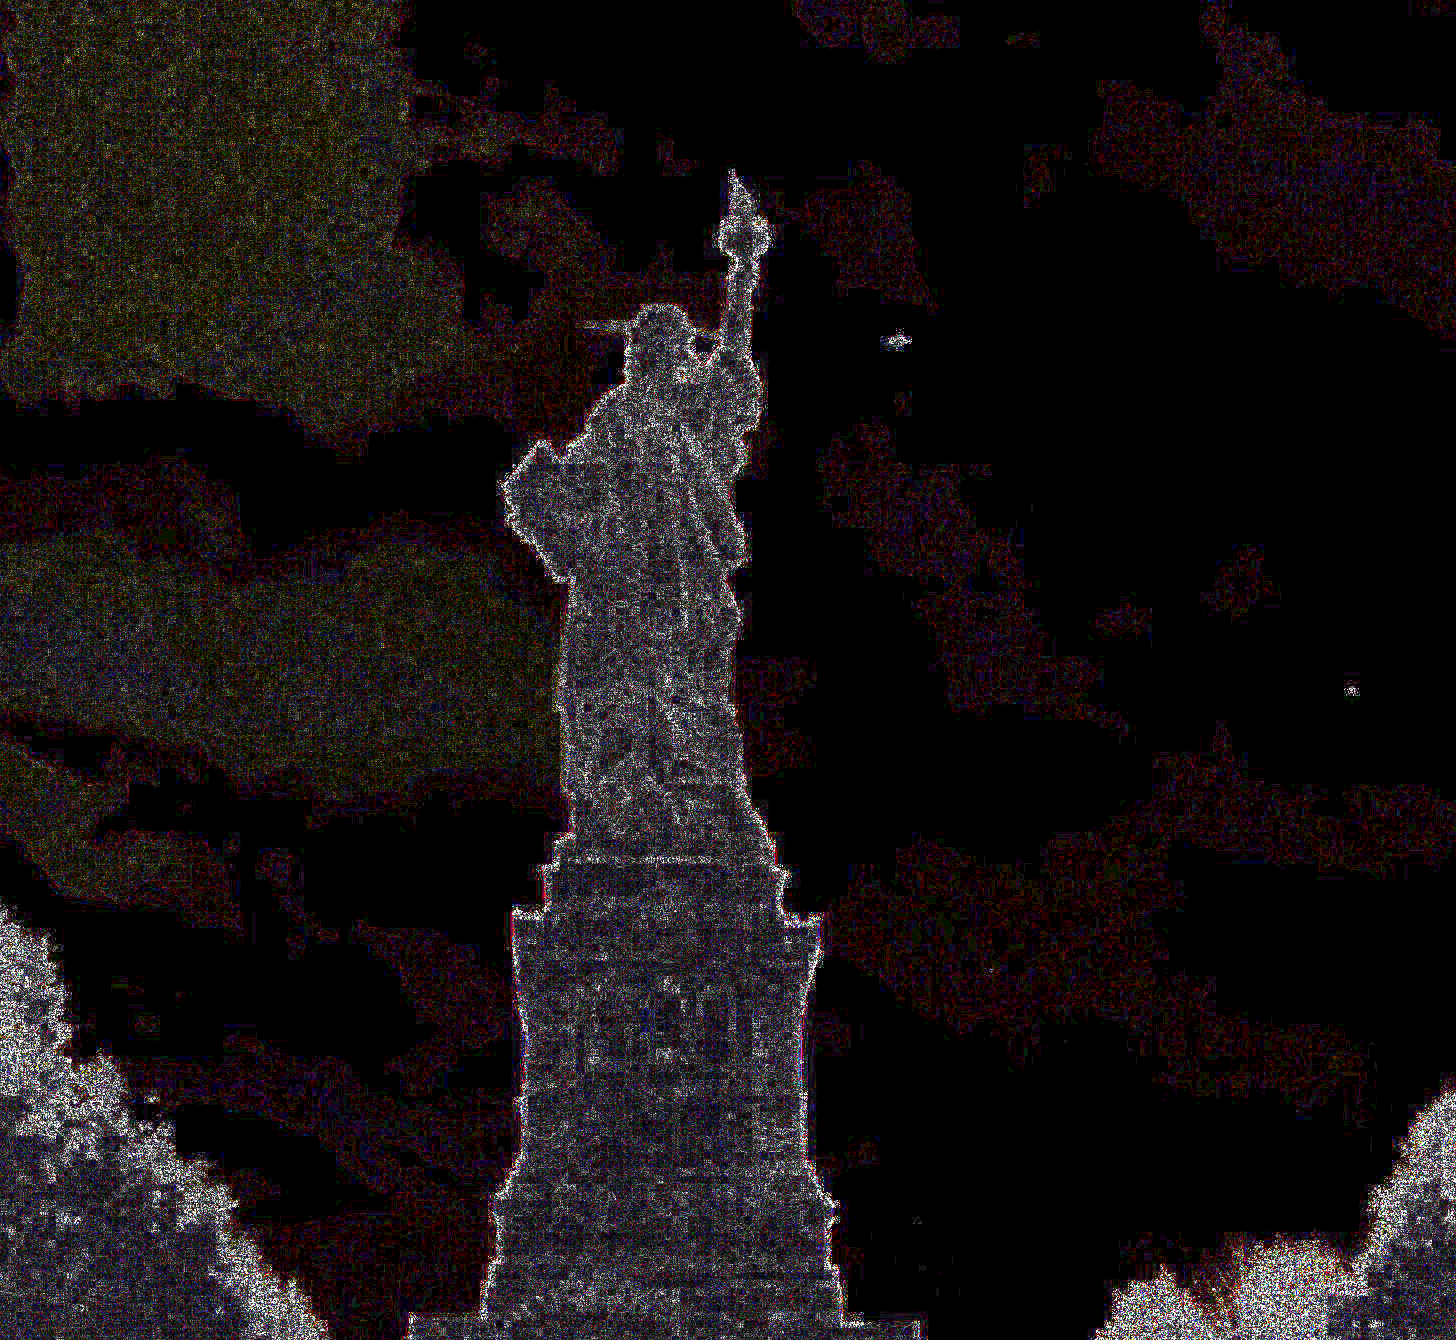 Foto alterada para mostrar el pixeleado en ella. Puede verse un extraño pixeleado en el contorno de la estatua de la Libertad, quizás causado por la baja calidad de la imagen. También noten el pixeleado que rodea a la anomalía.